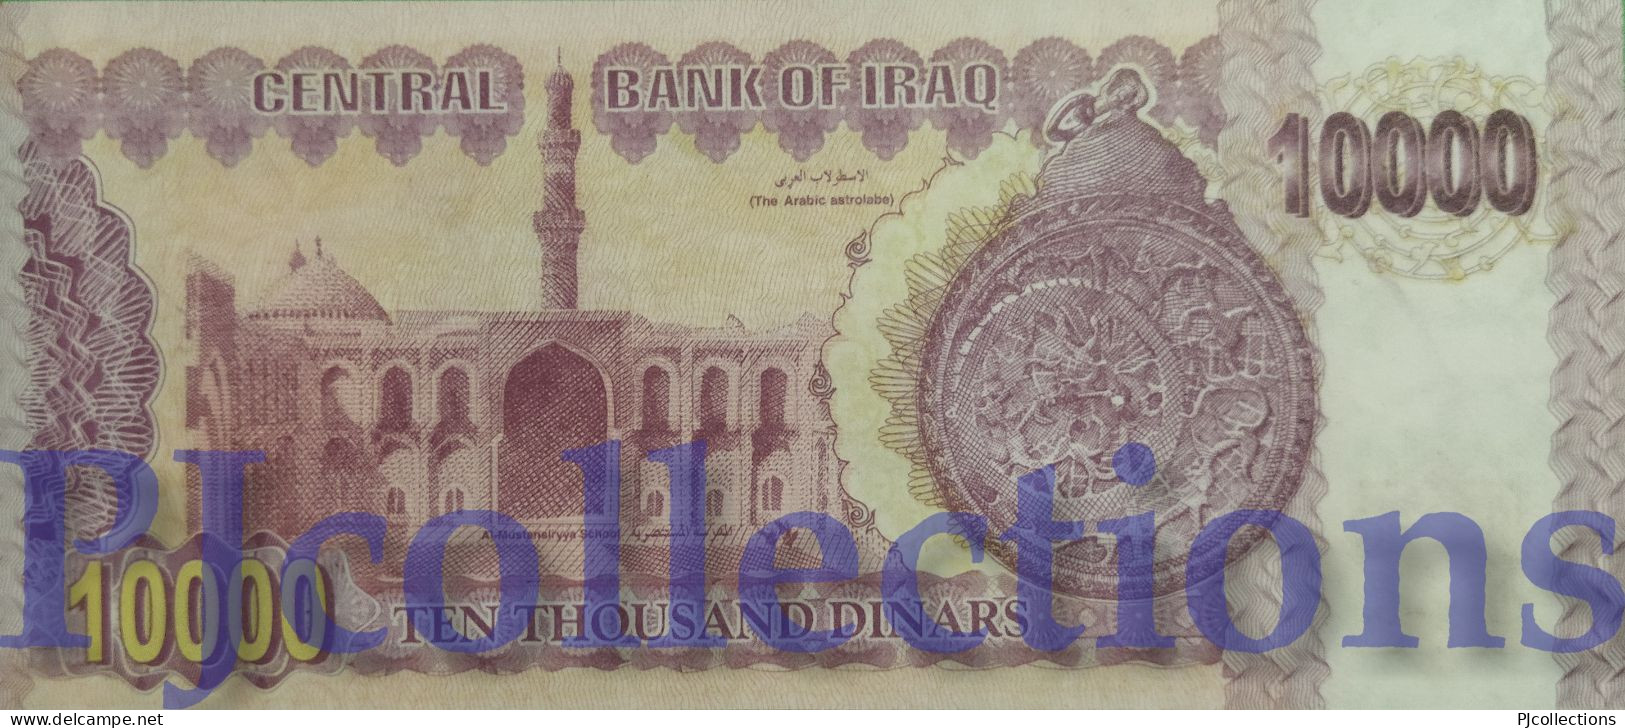 IRAQ 10000 DINARS 2002 PICK 89 UNC GOOD SERIAL NUMBER "545444" - Iraq